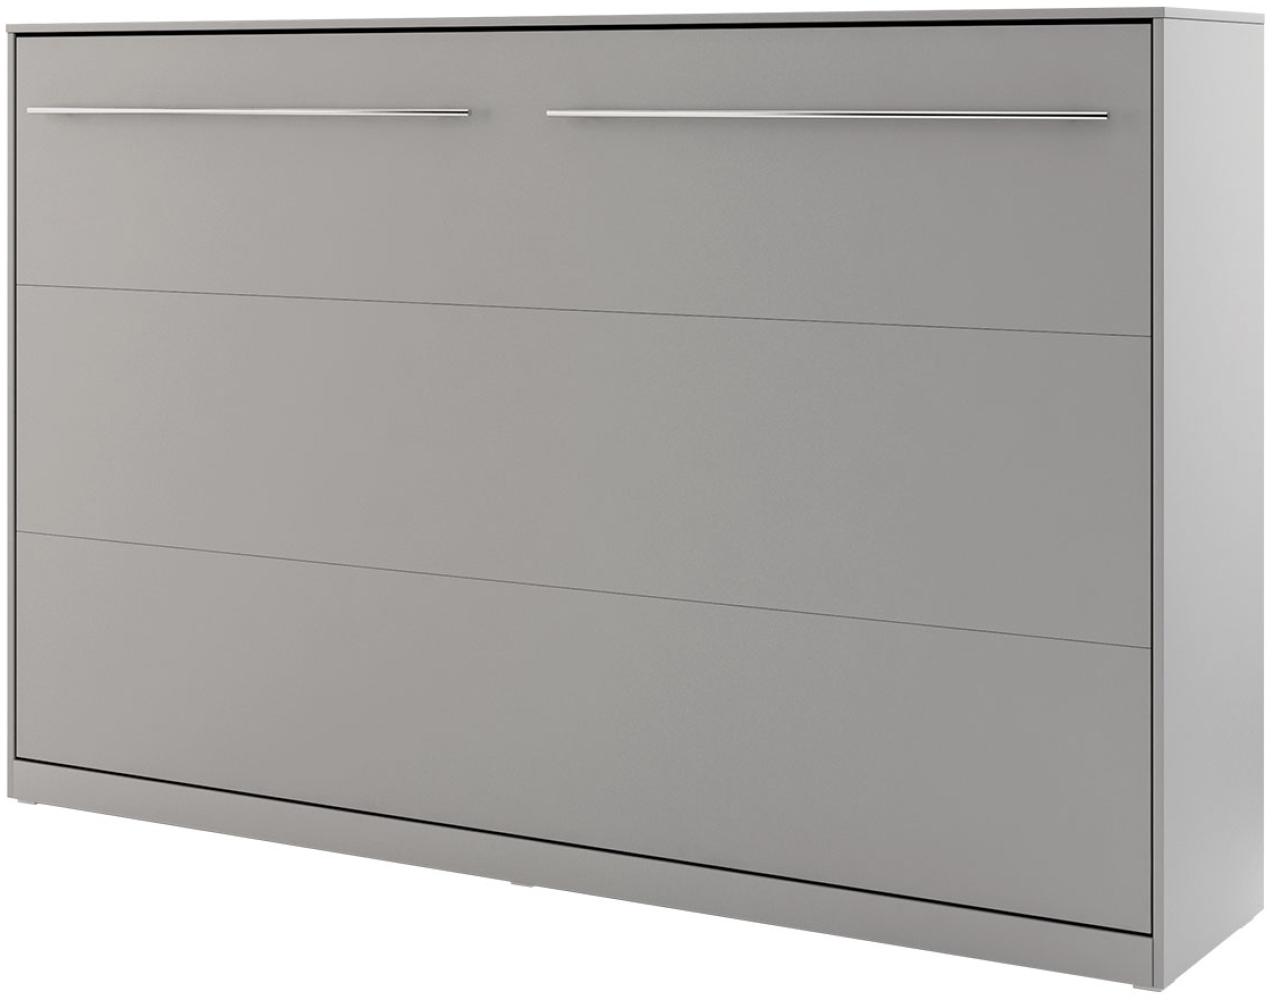 Schrankbett Concept Pro II Horizontal CP-05 (Farbe: Grau, Größe: 120x200 cm) Bild 1